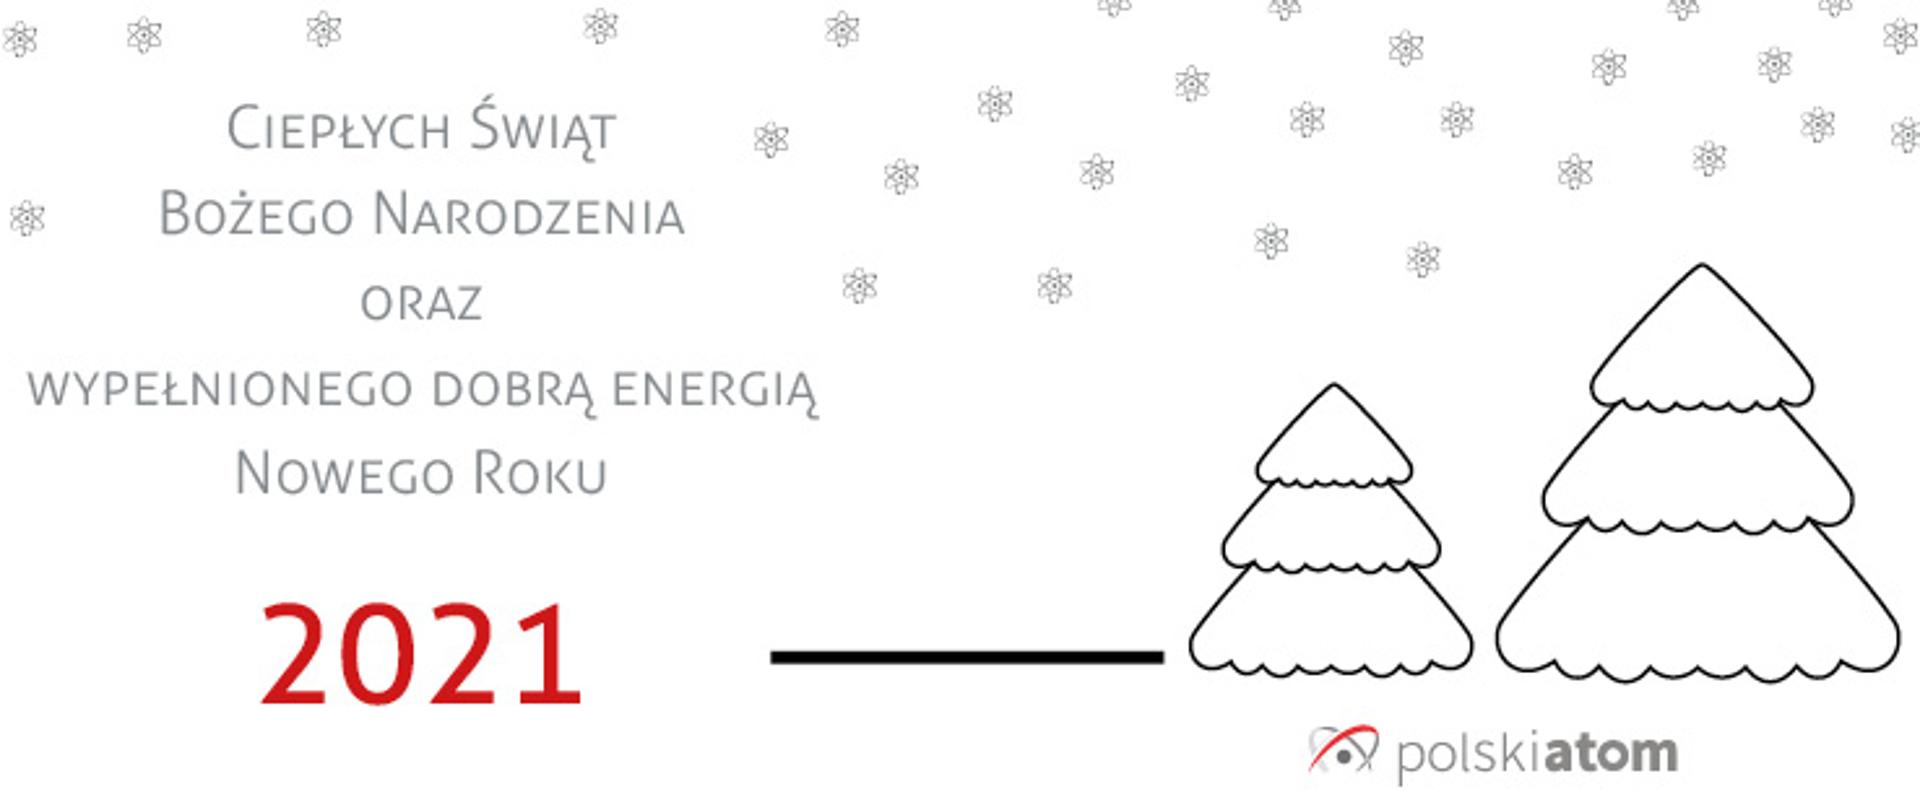 Kartka świąteczna z napisem Ciepłych Świąt Bożego Narodzenia oraz Wypełnionego Dobrą Energią Nowego Roku 2021 